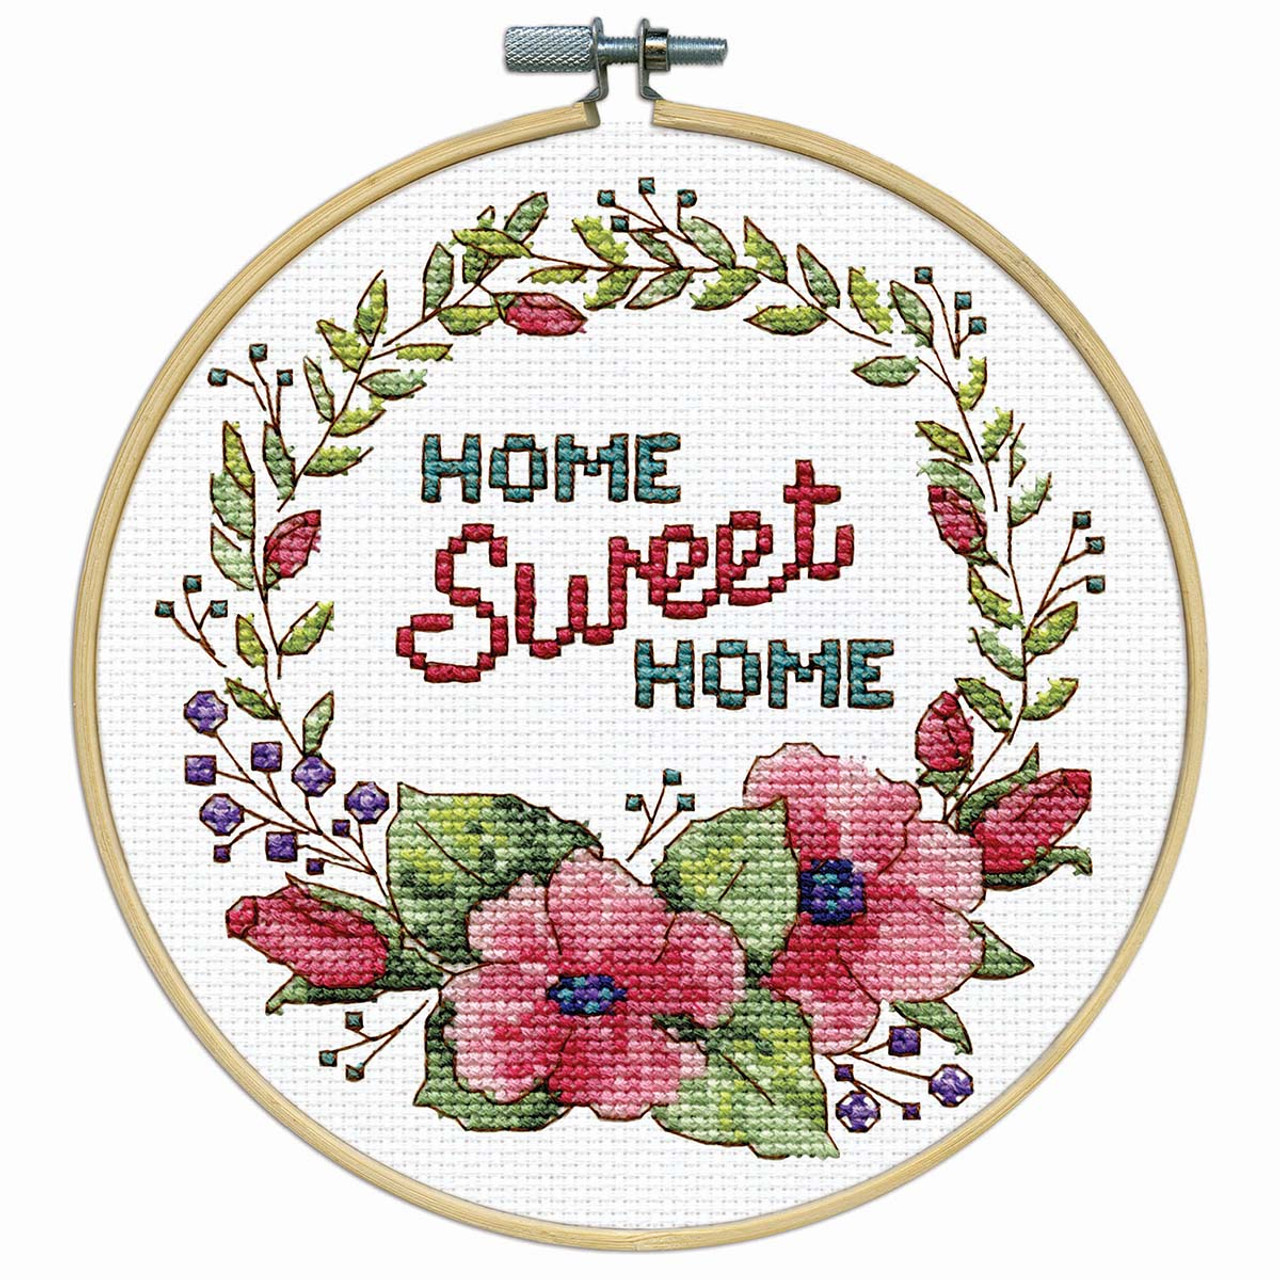 Embroidery Hoop Kit Flowers Green Fields